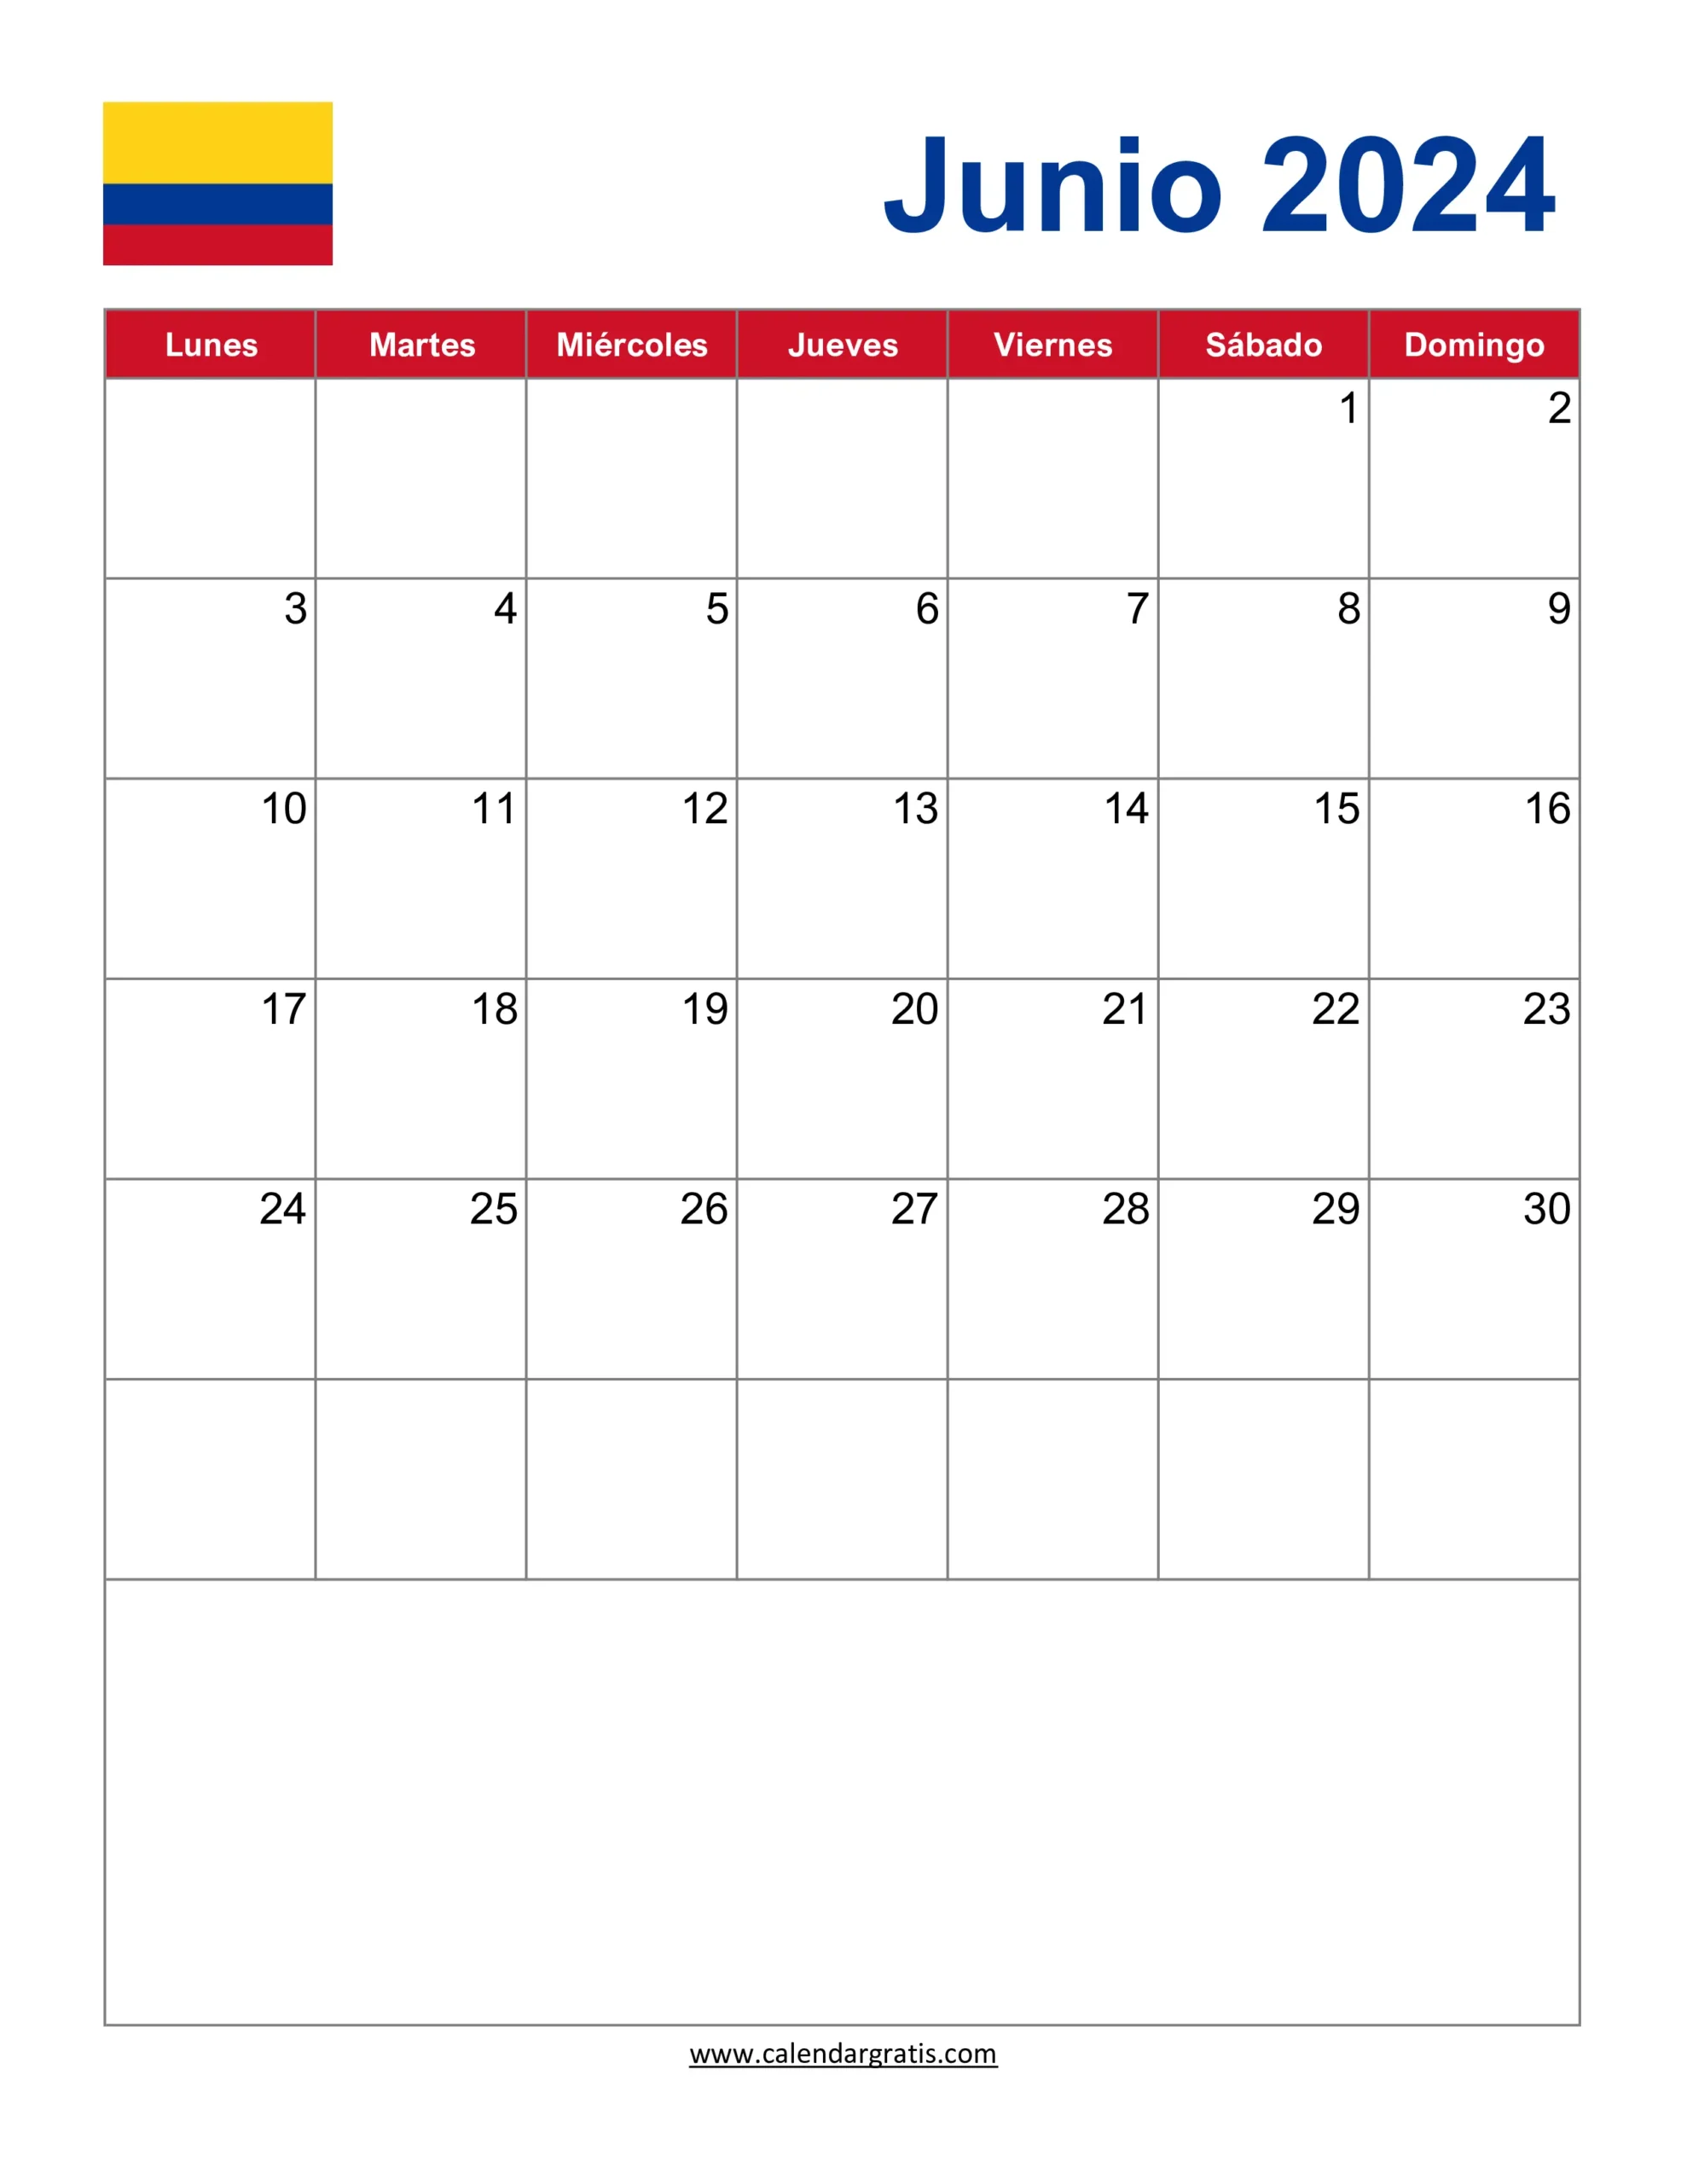 Calendario Junio 2024 con Notas para Imprimir